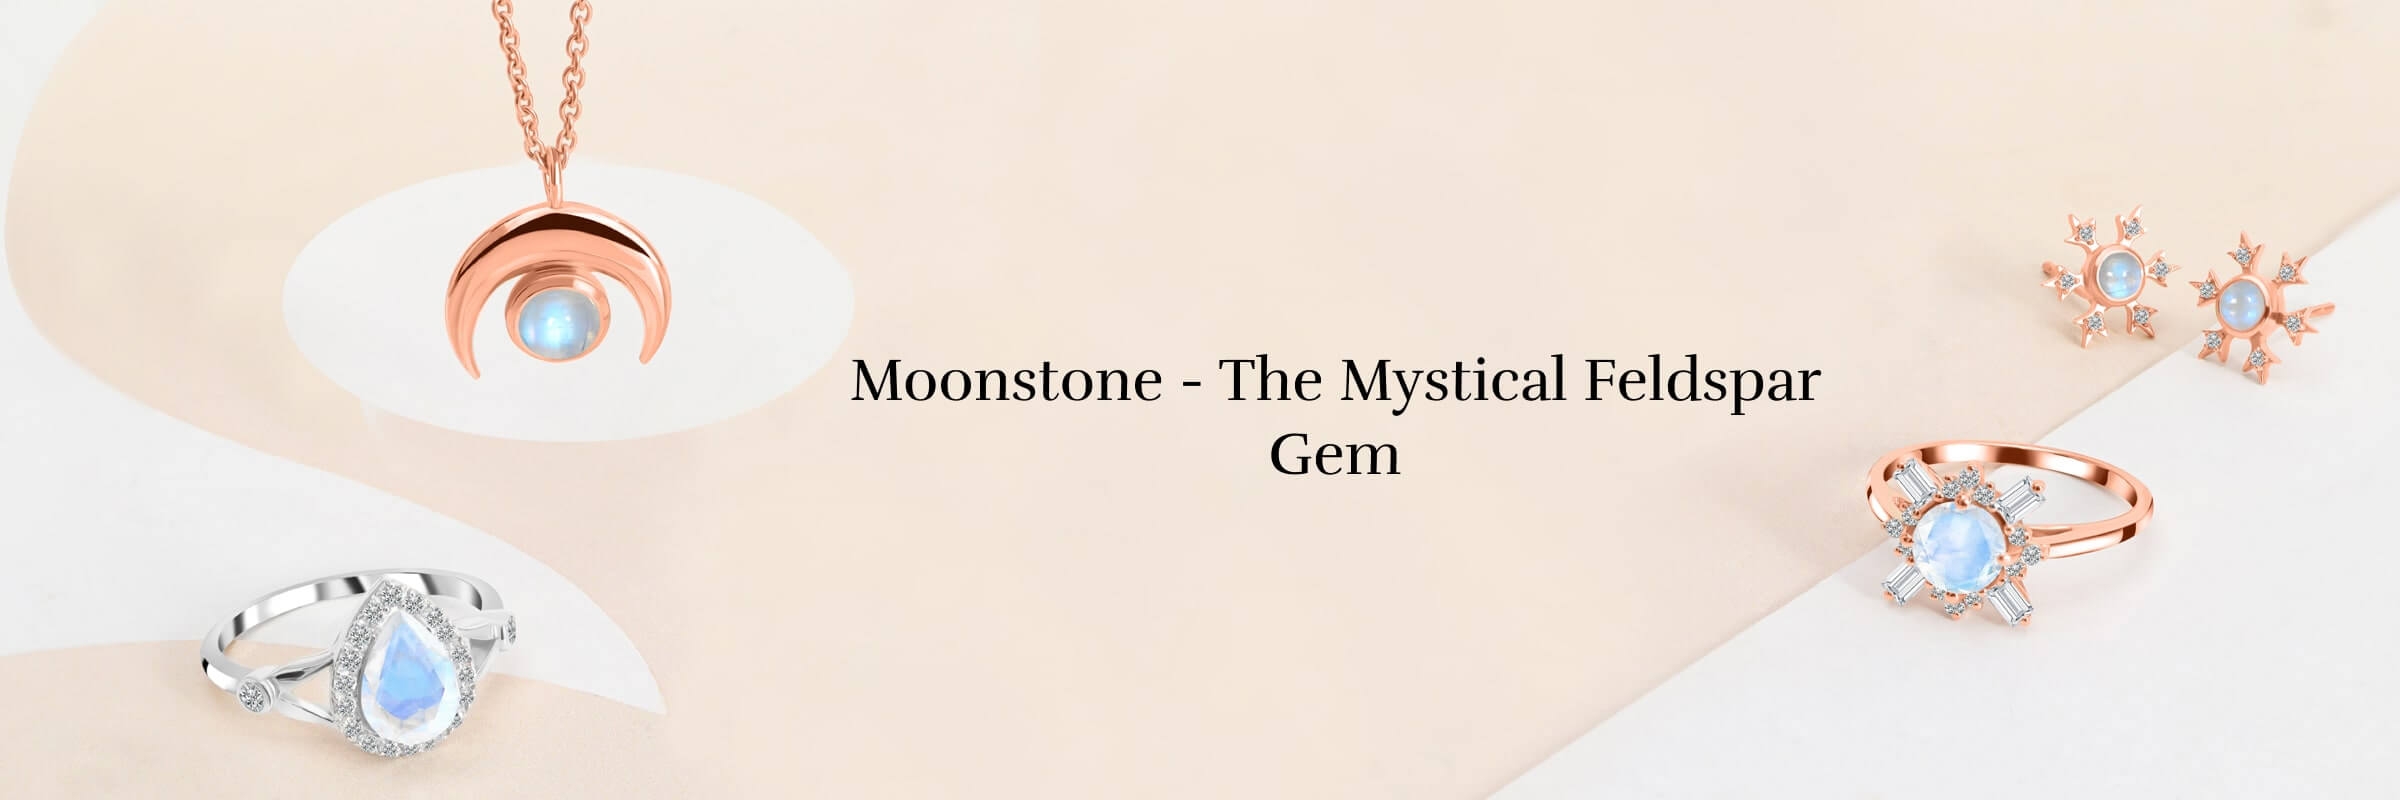 Moonstone Is a Variety of Feldspar